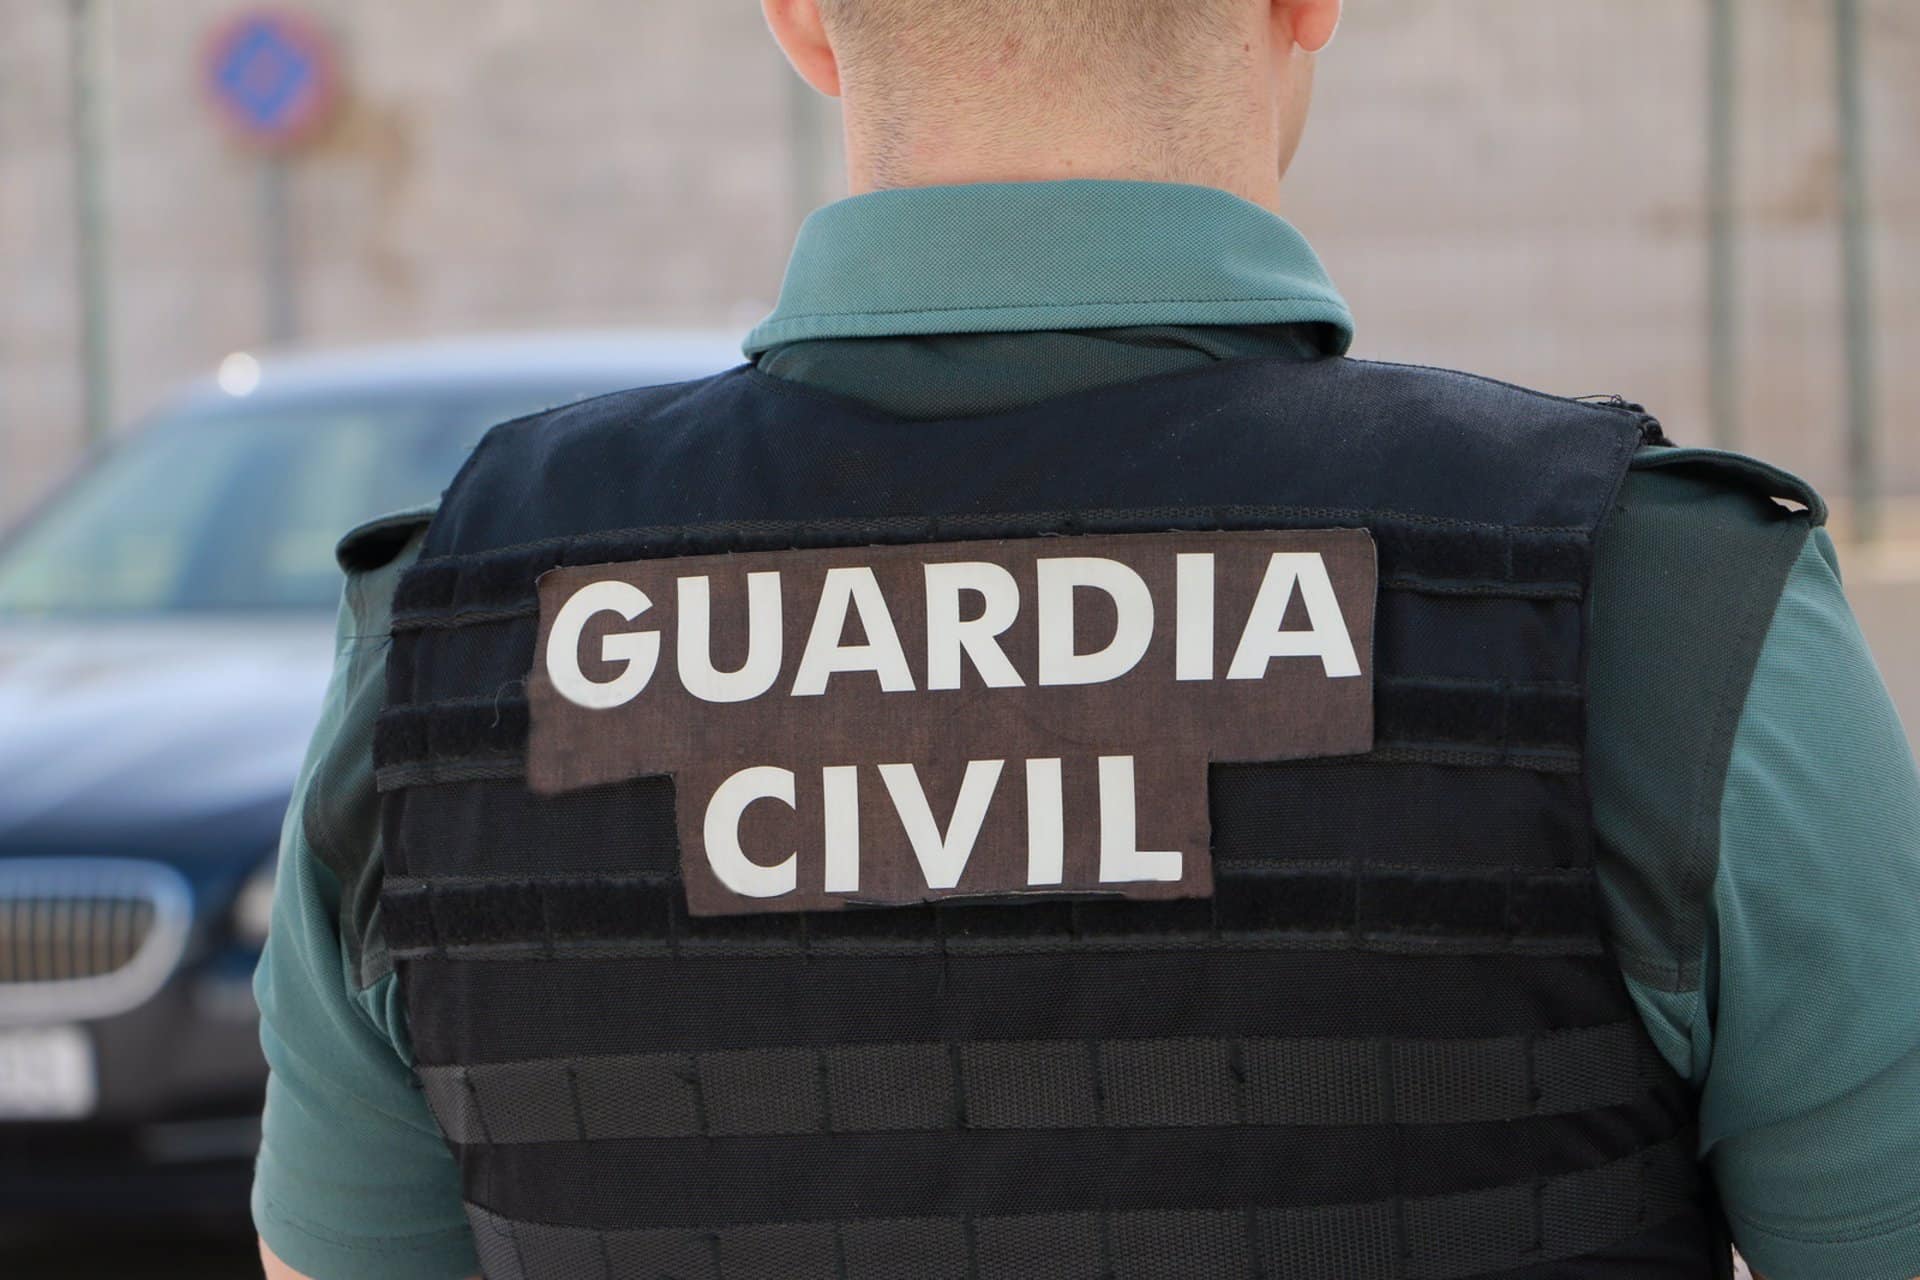 18/11/2022 Un agente de la Guardia Civil, de espalda.
SOCIEDAD ANDALUCÍA ESPAÑA EUROPA SEVILLA
GUARDIA CIVIL